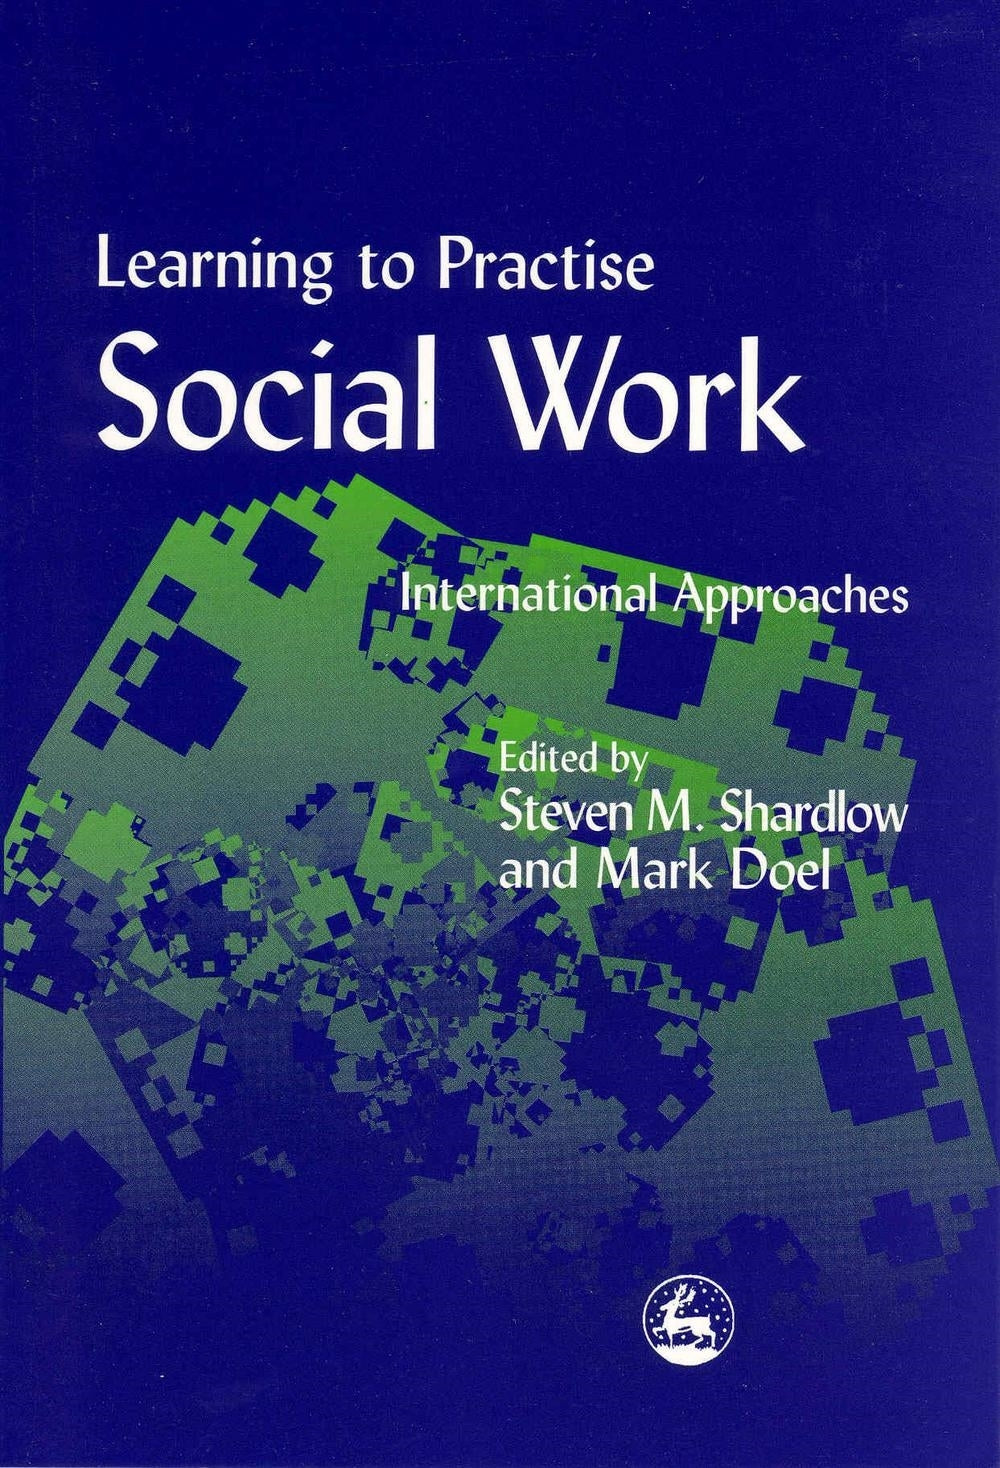 Learning to Practise Social Work by Prof Mark Doel, Steven Shardlow